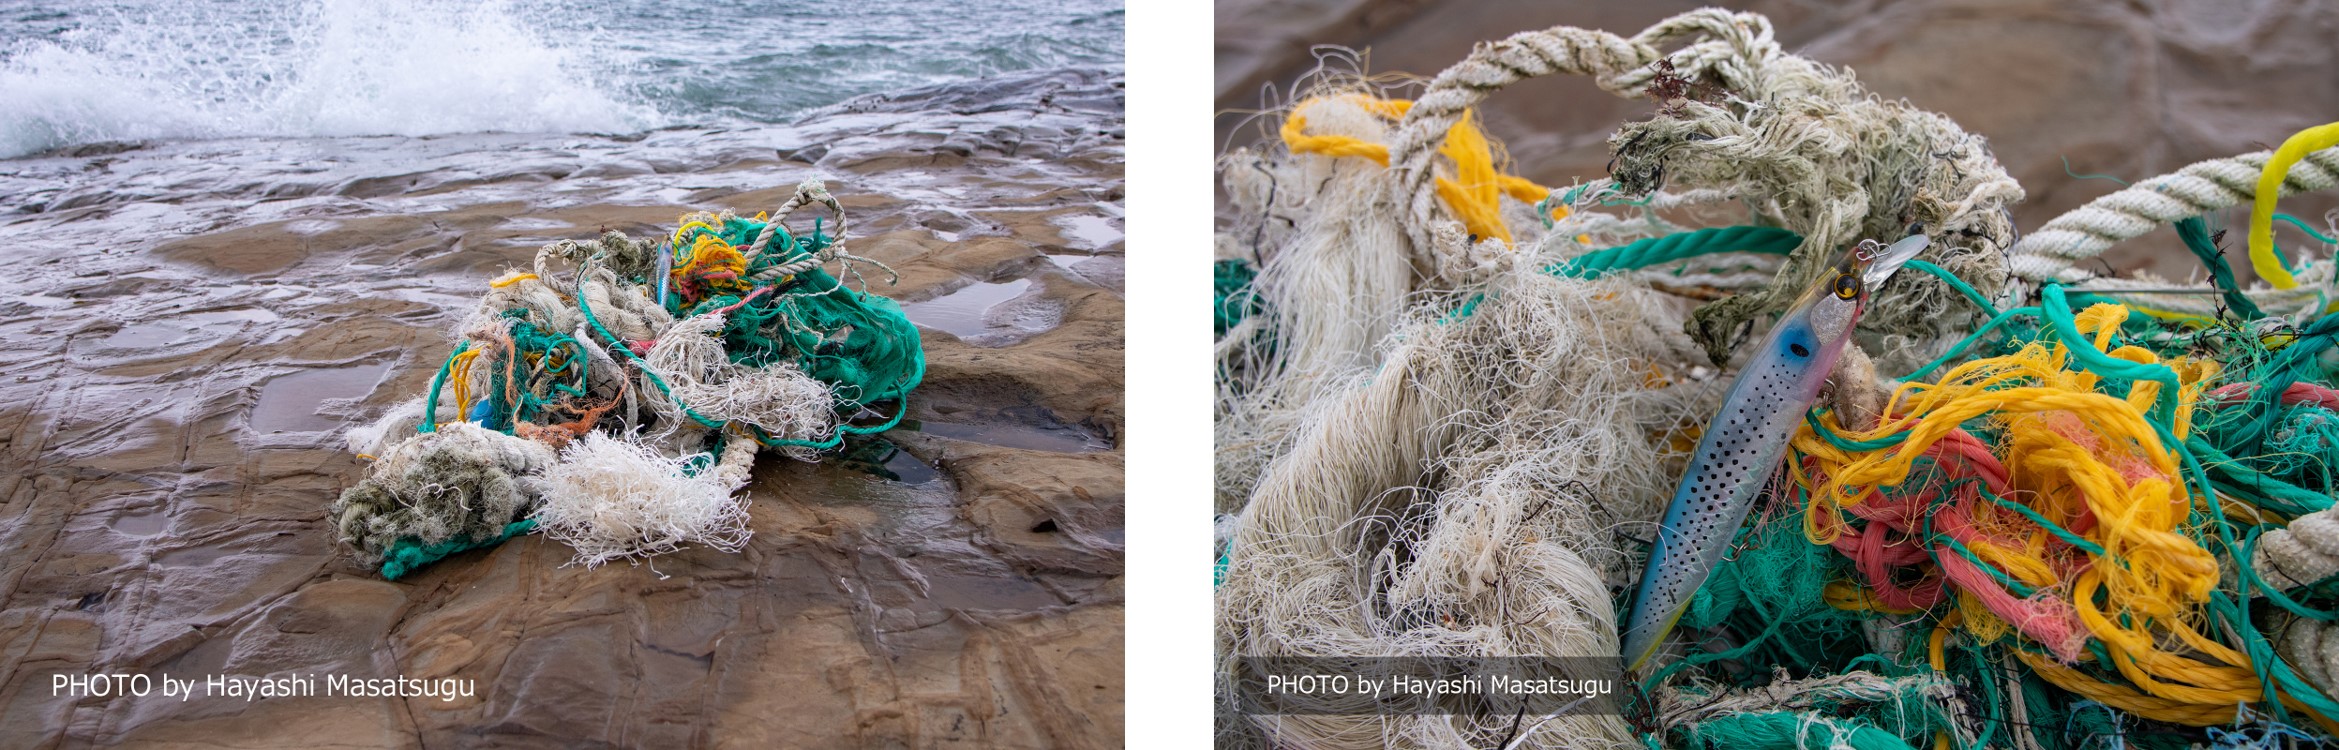 棄てられる漁網を衣服の原料にするチャレンジ「UNTANGLE IT™(アンタングルイット)」豊島とSHINDOがブランドパートナー連携のサブ画像3_▲海洋を漂流するゴミ。海洋に漂着するゴミを総じて「マリン・デブリ(海洋のゴミの塊)」と呼ぶ。写真は様々な漁網が絡みデブリ(塊)状になったもの。デブリの中には釣りに使用するルアーも。